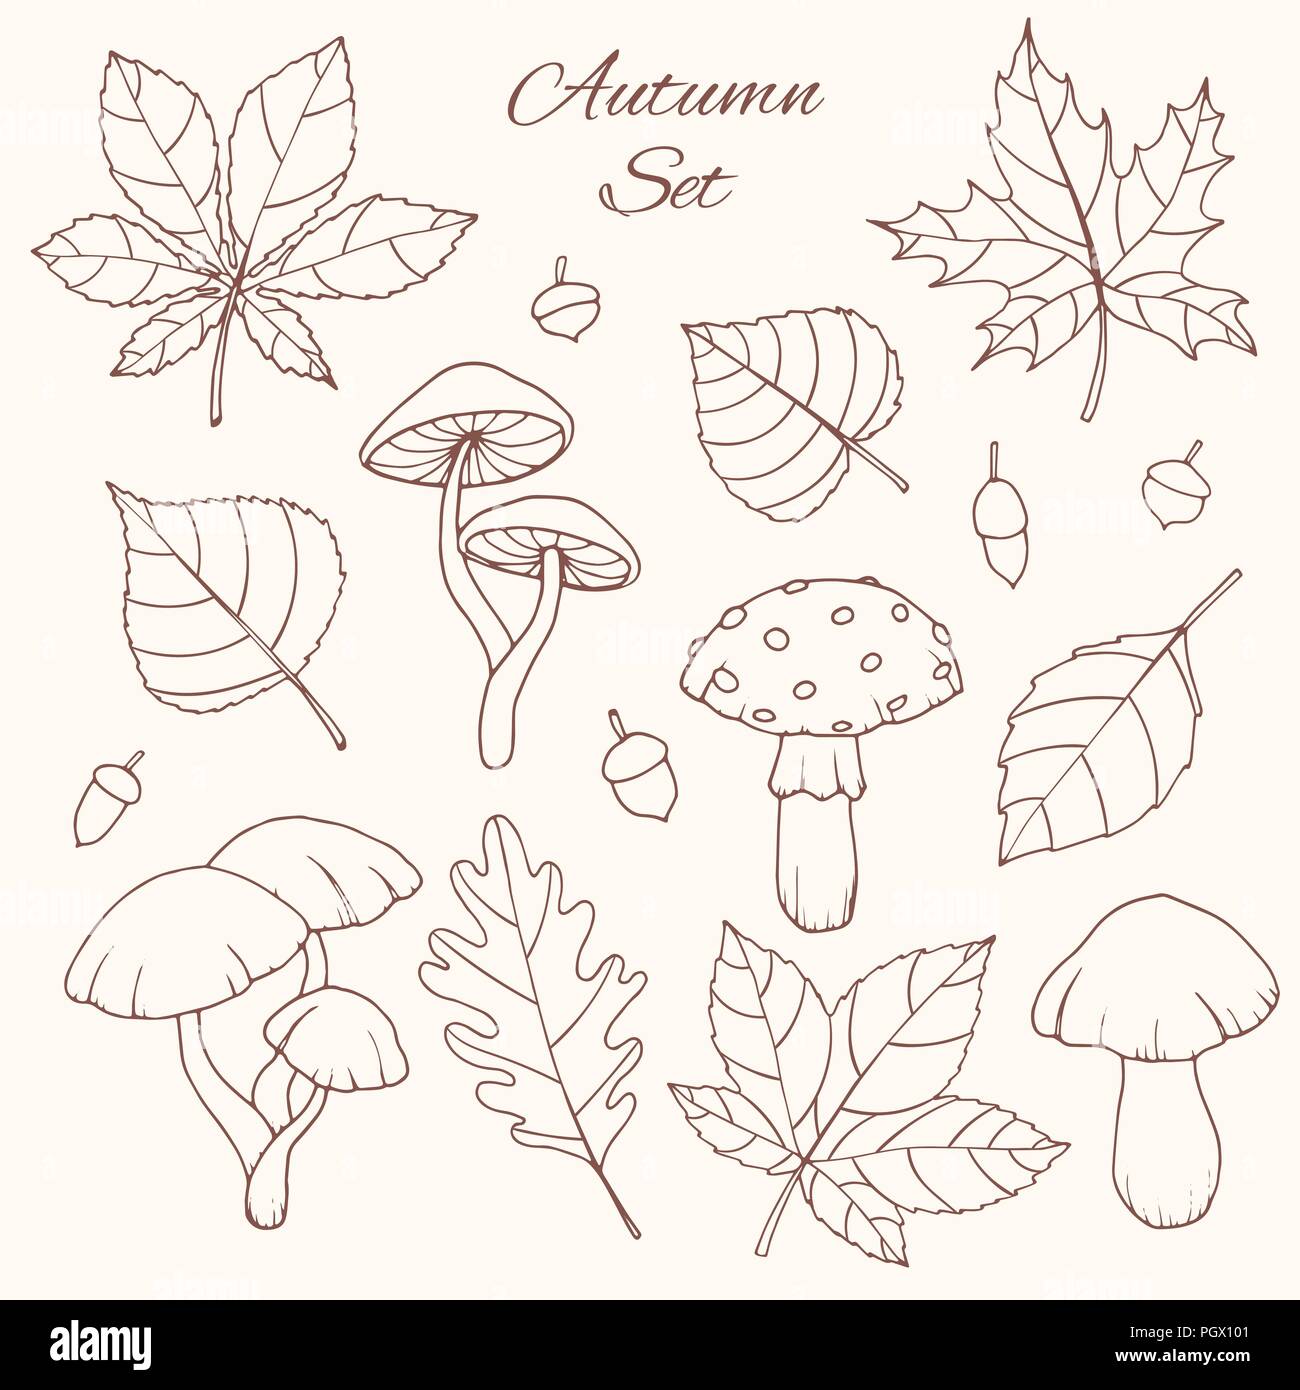 Hand drawn vector set d'automne avec le chêne, peuplier, hêtre, érable, de trembles et de feuilles de marronnier, les glands et les champignons isolés d'art de la ligne sur le dos blanc Illustration de Vecteur